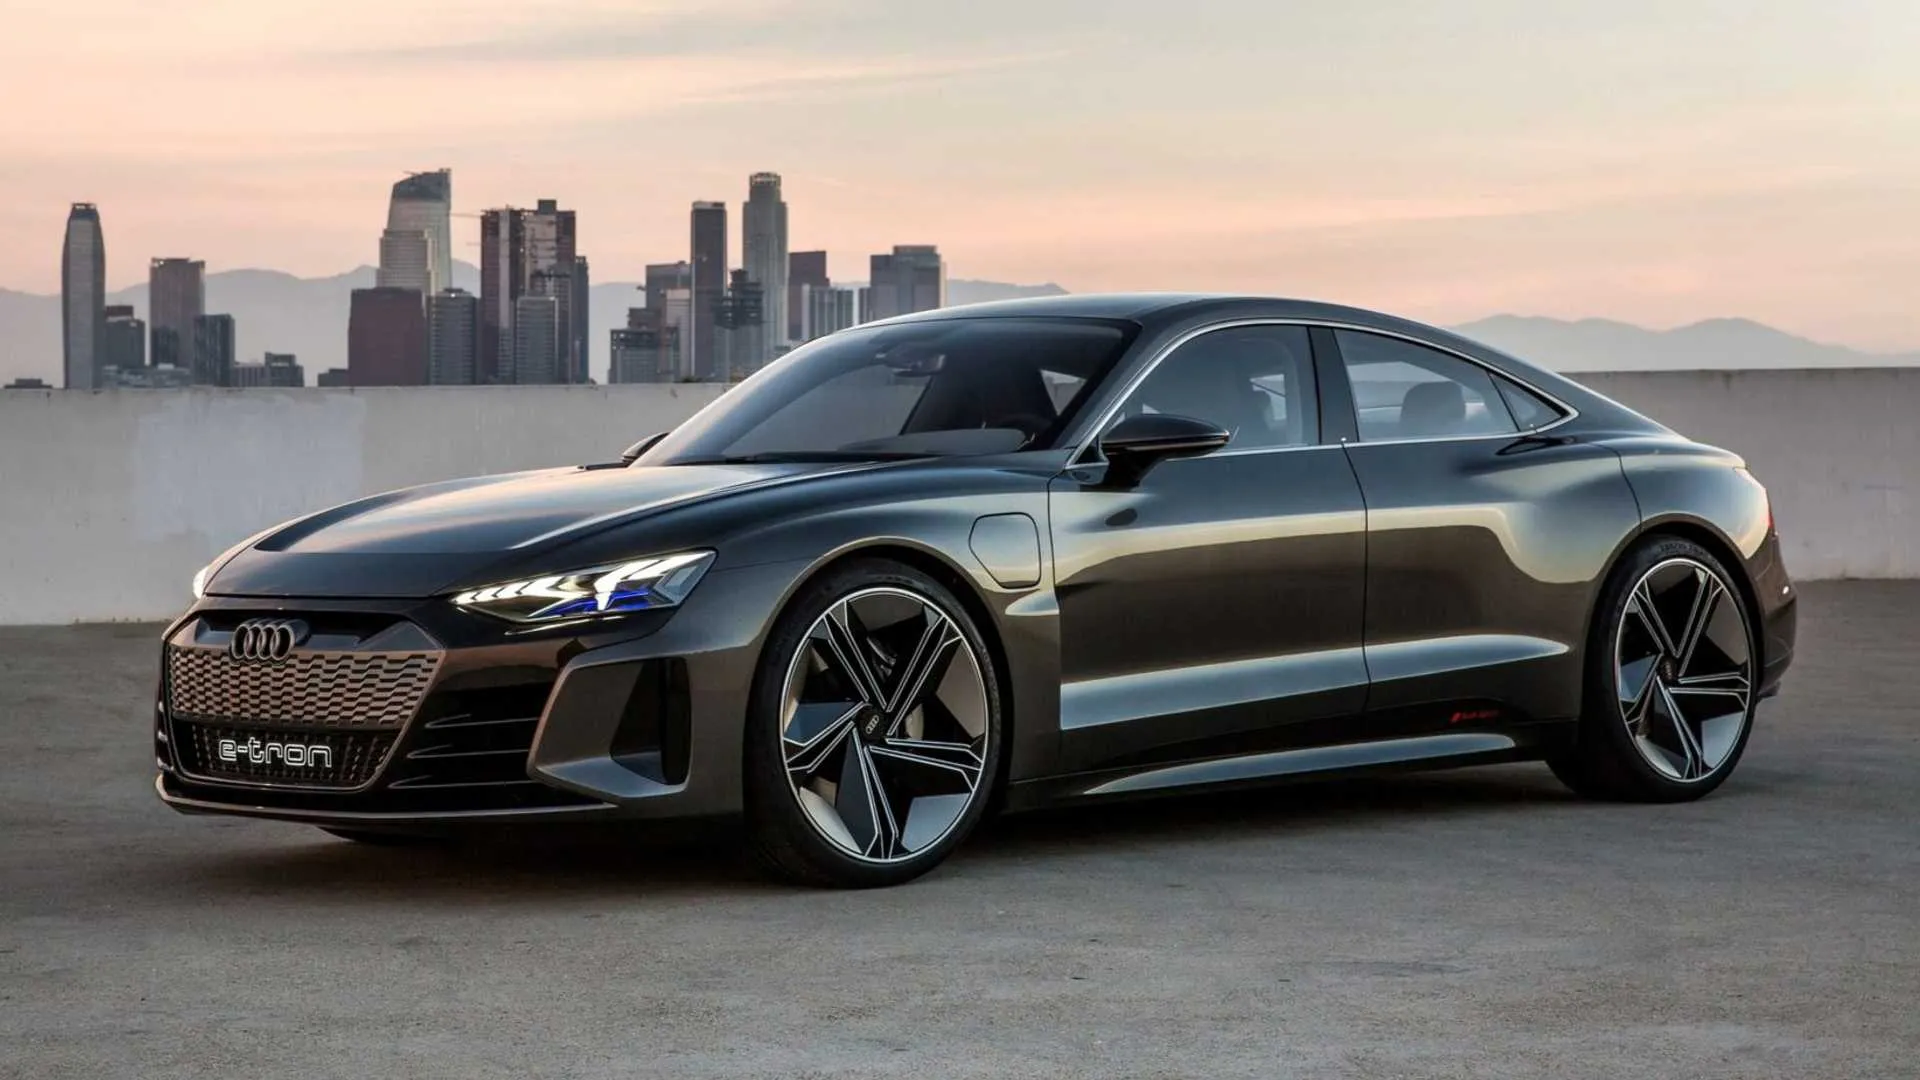 Audi şirkəti Tesla ilə rəqabət aparmaq üçün nəzərdə tutulmuş parlaq elektrik avtomobili olan e-Tron GT-ni əsas qiyməti 100,000 dollara təqdim etdi.